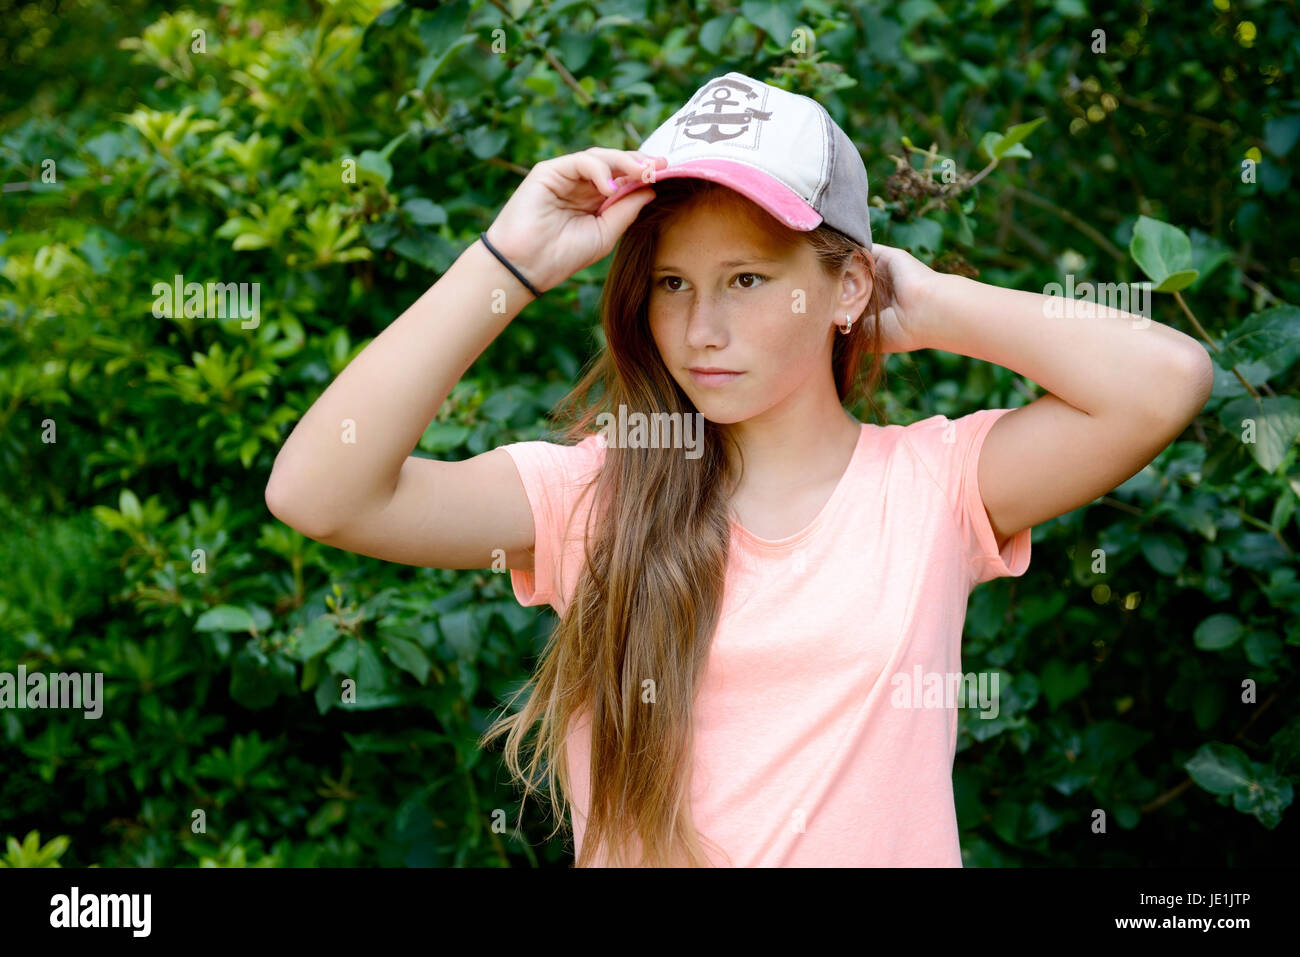 Junge Teenager-Mädchen mit langen blonden Haaren mit Baseball-Kappe. Im Freien mit grünem Hintergrund. Stockfoto